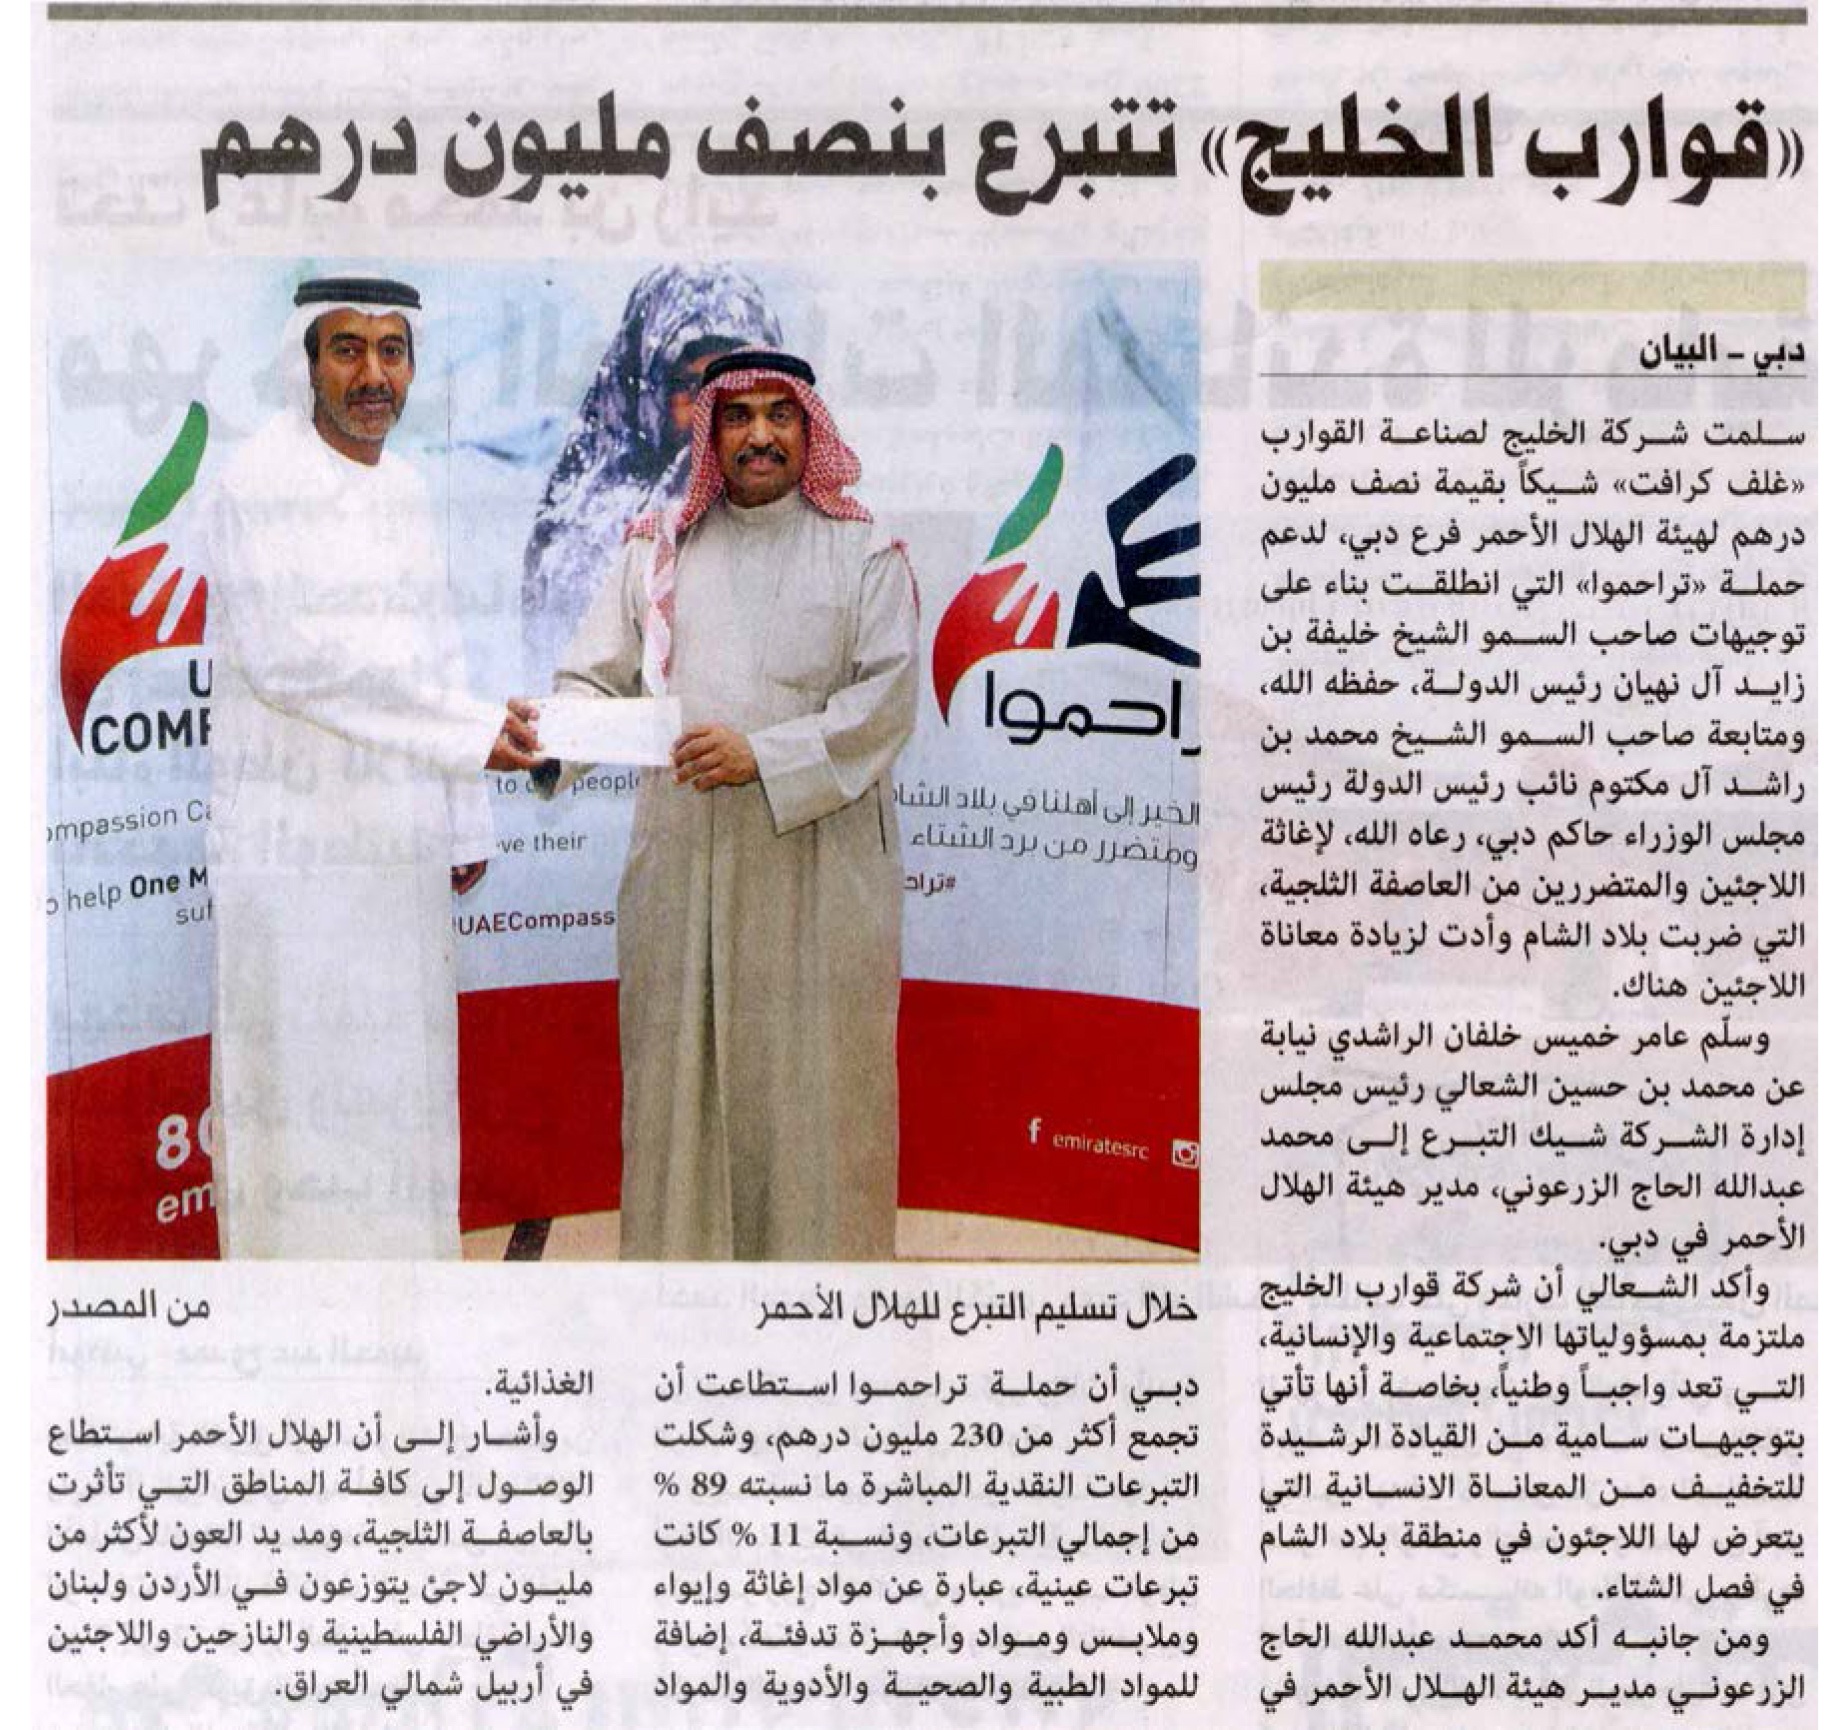 Пресс-атташе компании Gulf Craft, господин Амен Хамиз аль-Рошди, вручил благотворительный чек представителю из организации "Красный Полумесяц Эмираты". (газета Аль-Баян)